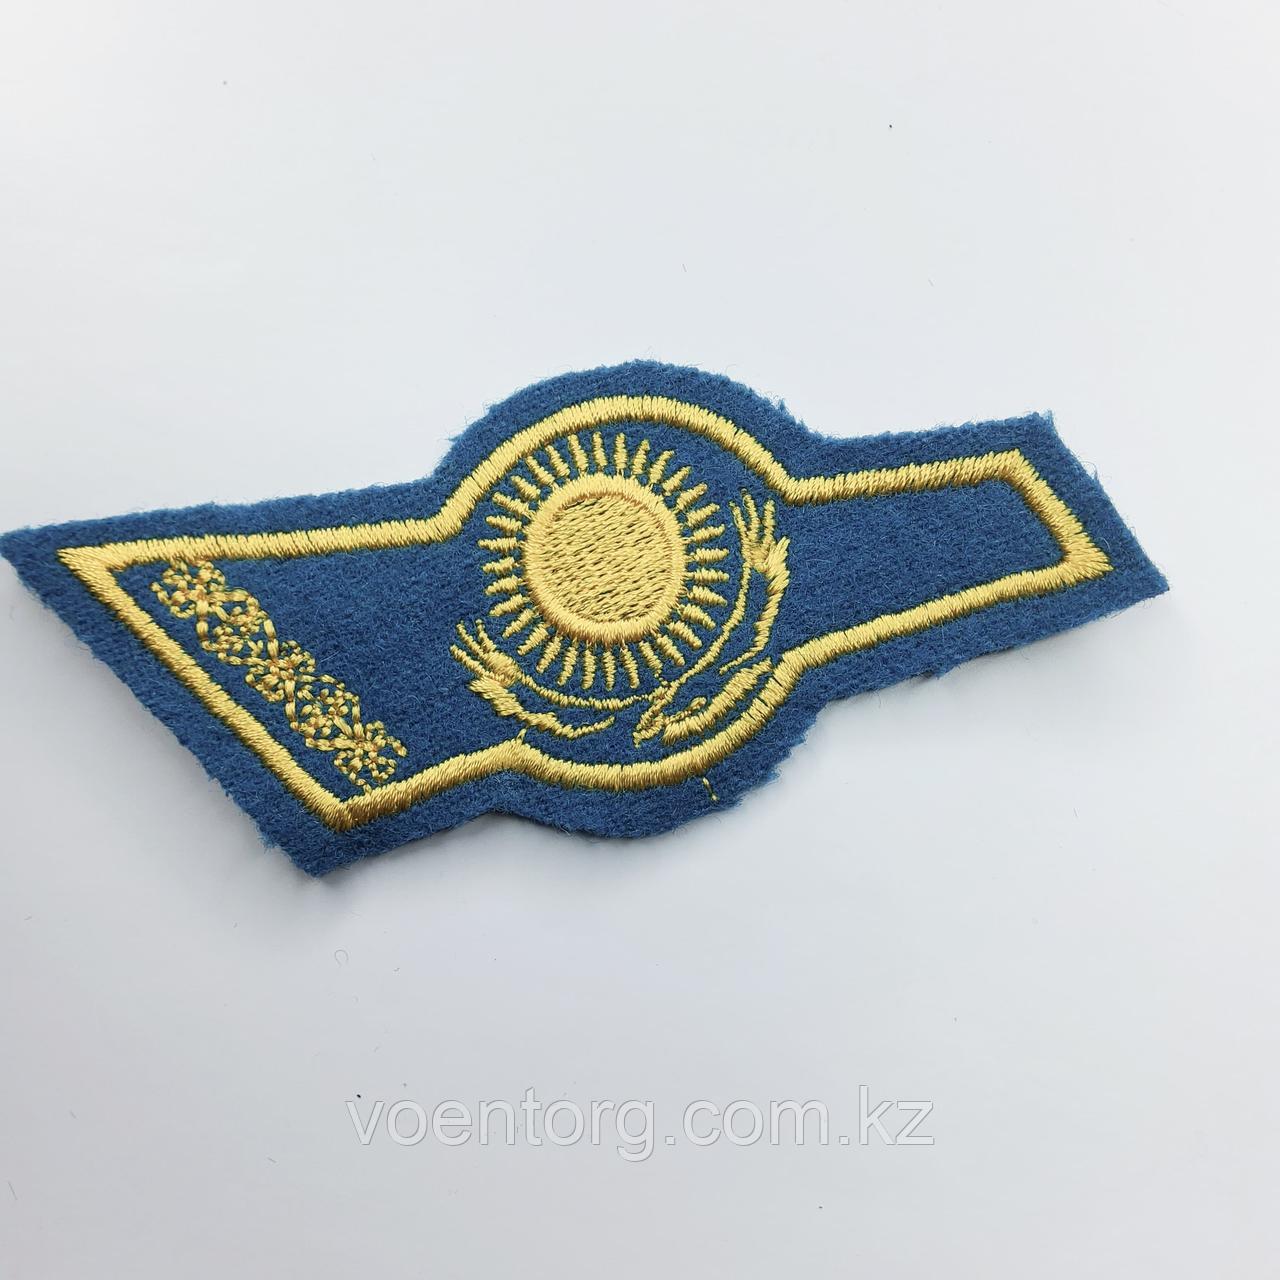 Уголок на берет вышитый флаг Казахстана